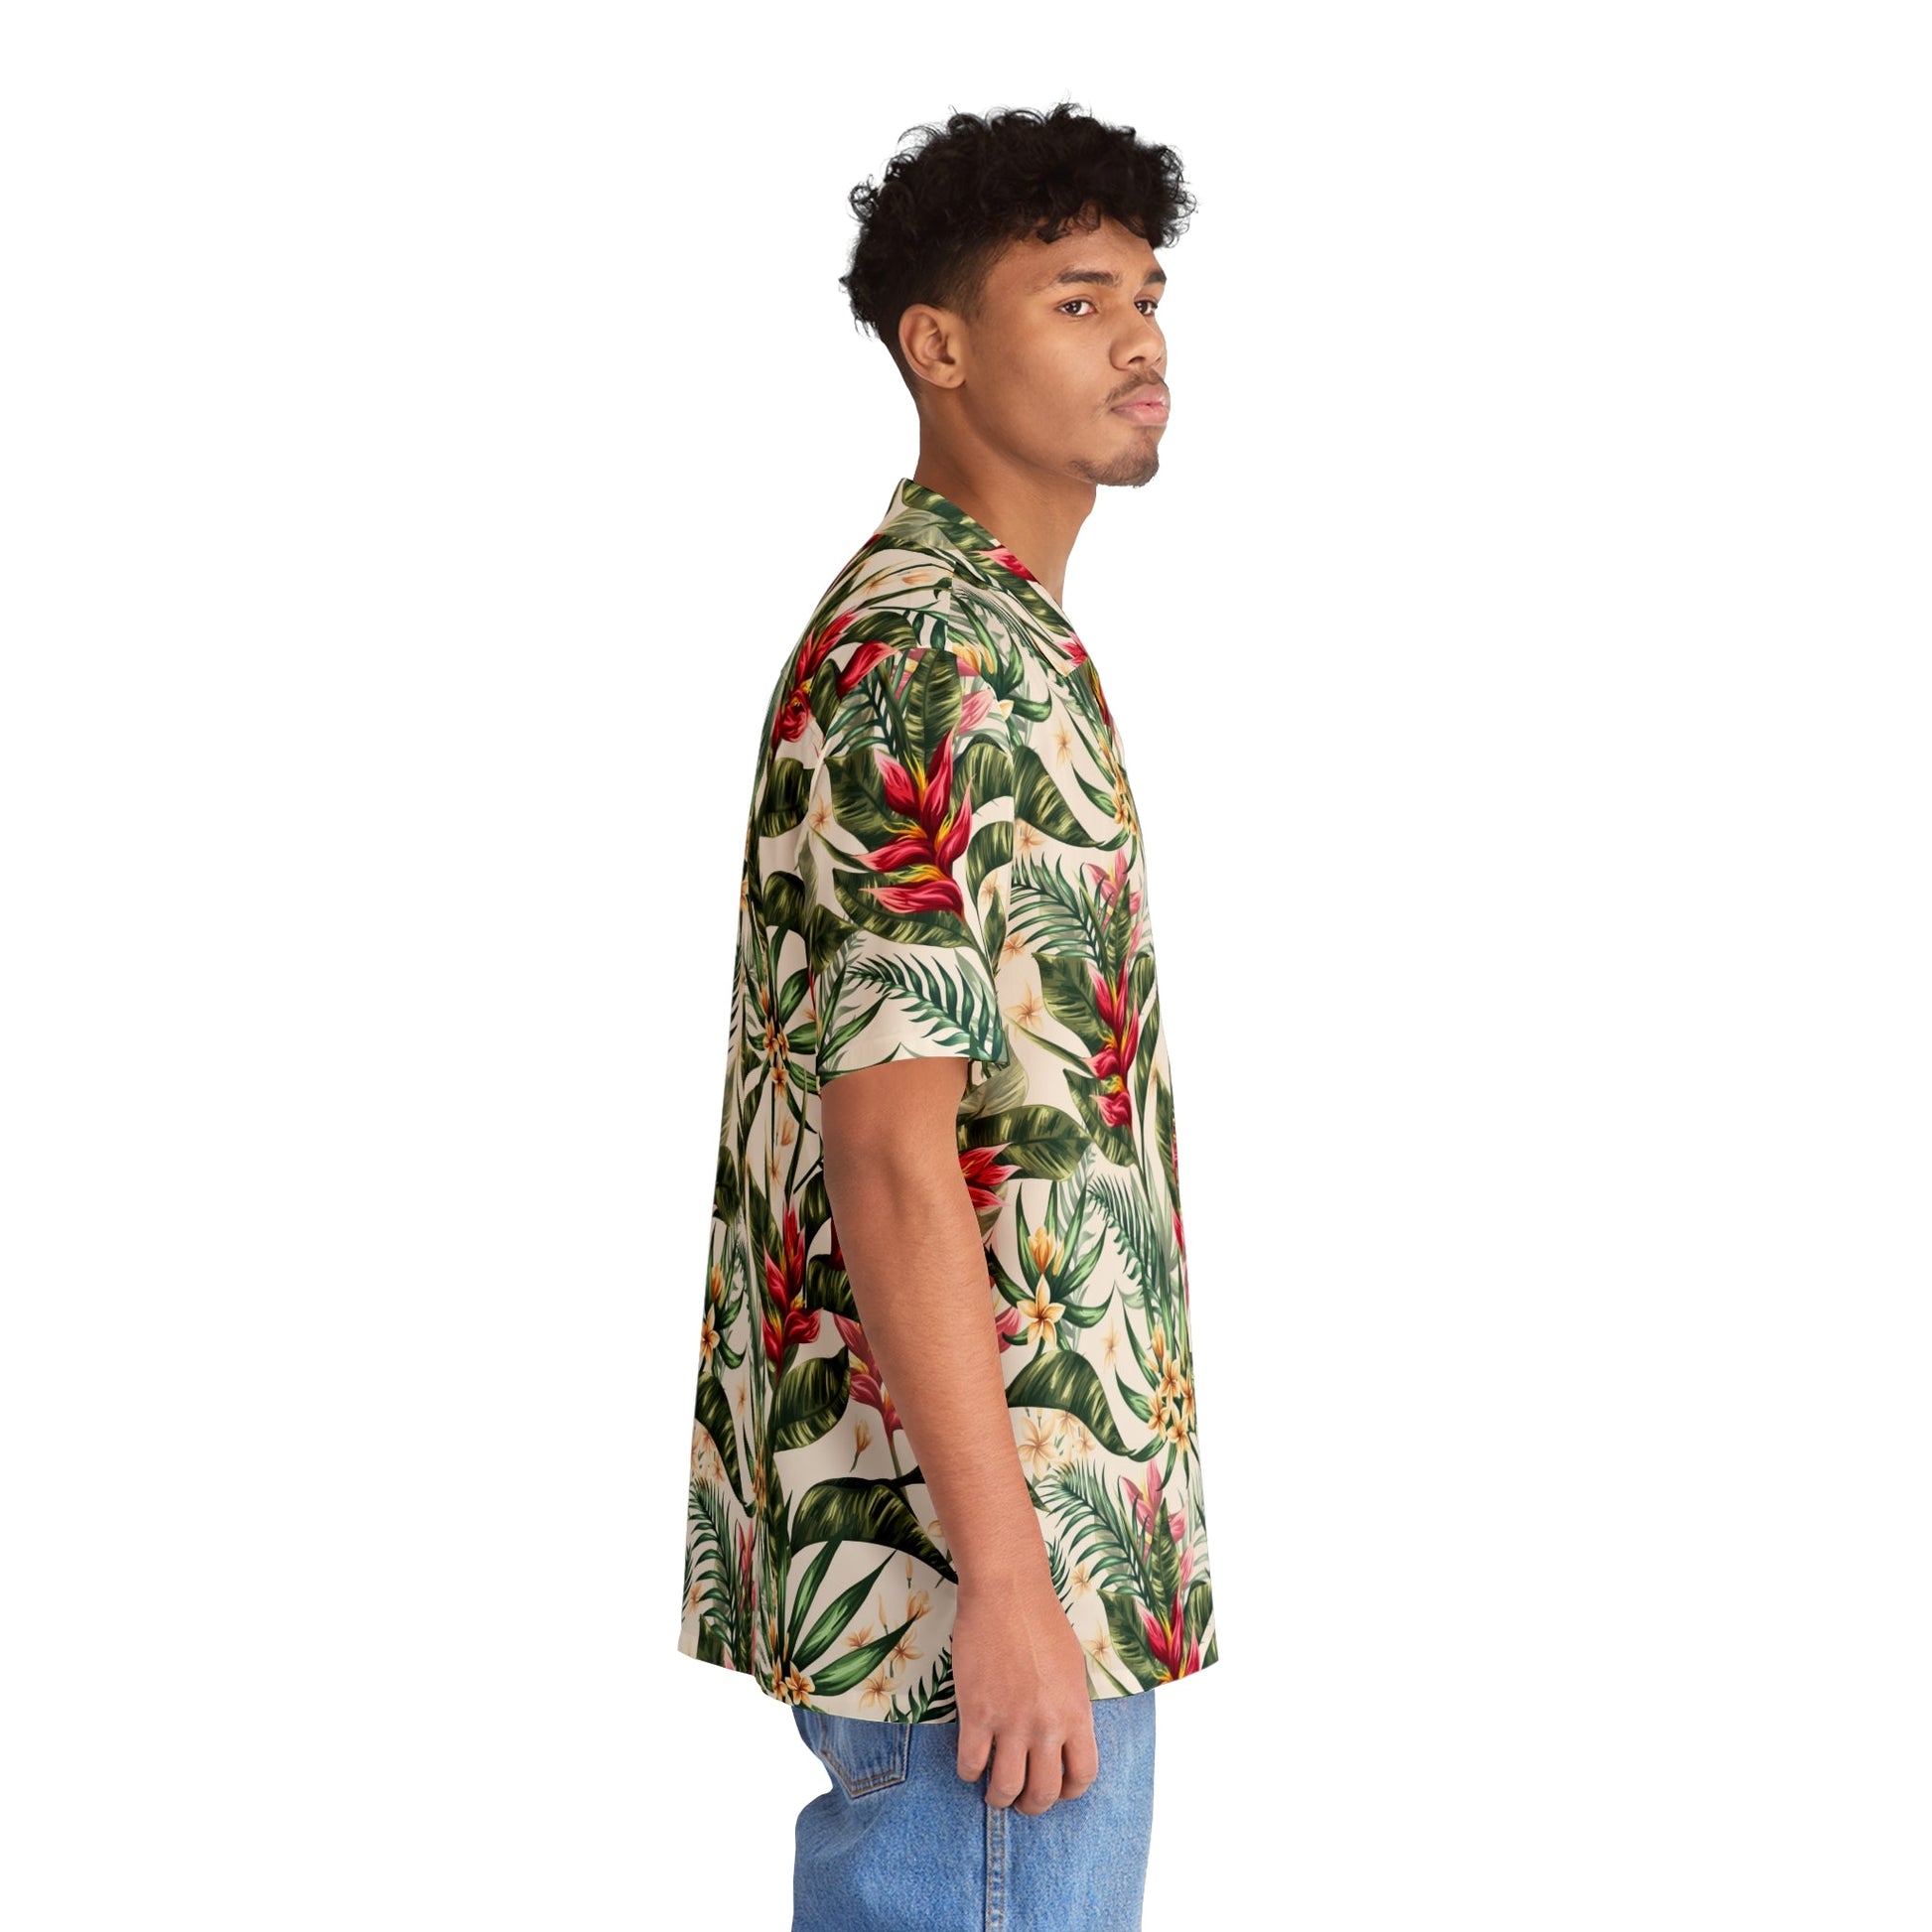 All Over Prints - Tropical Men's Hawaiian Shirt